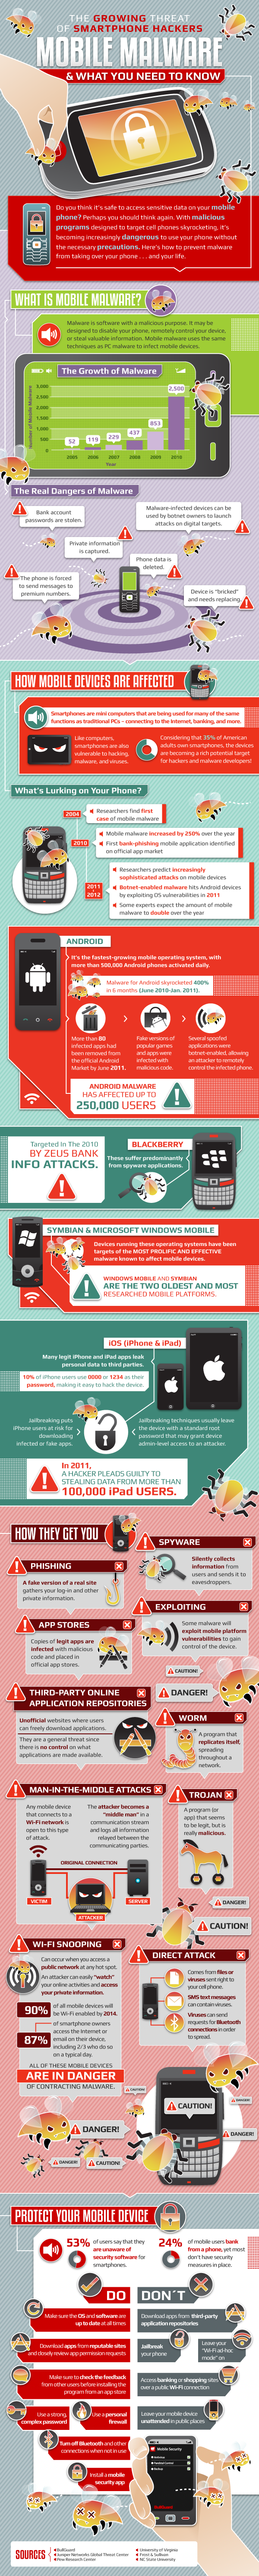 Mobile-Malware-Mashable-Infographic (1)